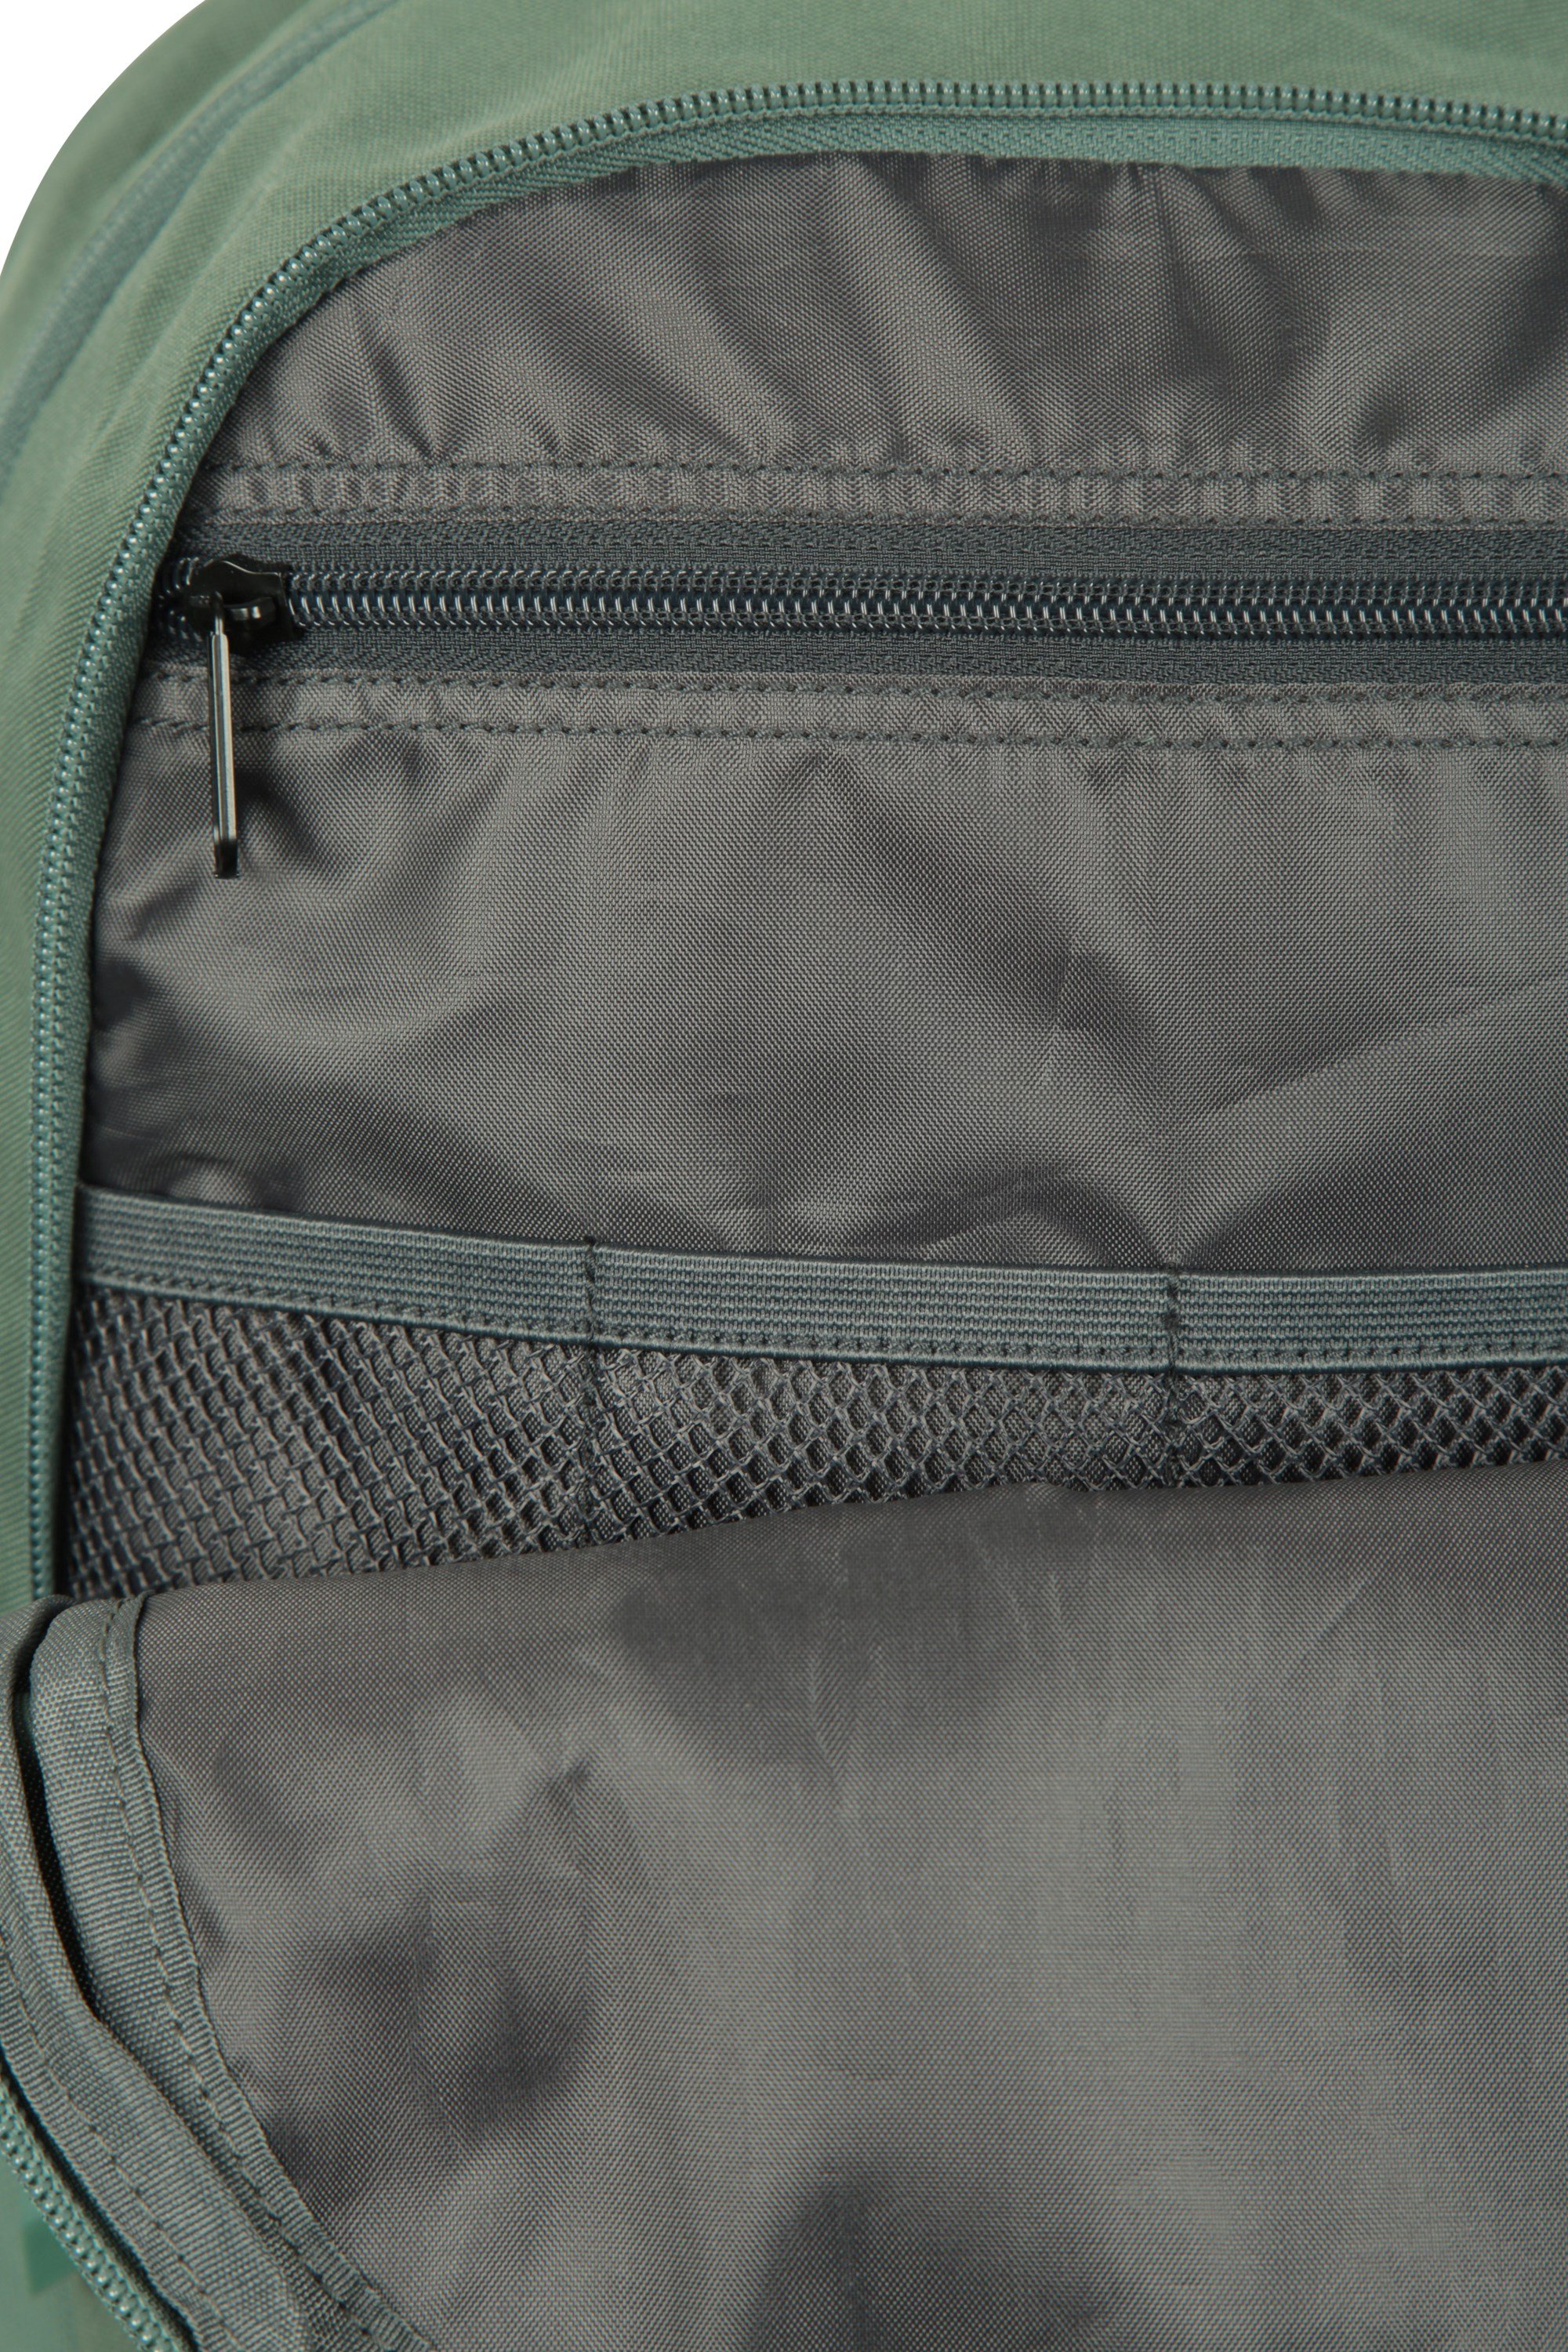 Lark 23L Backpack